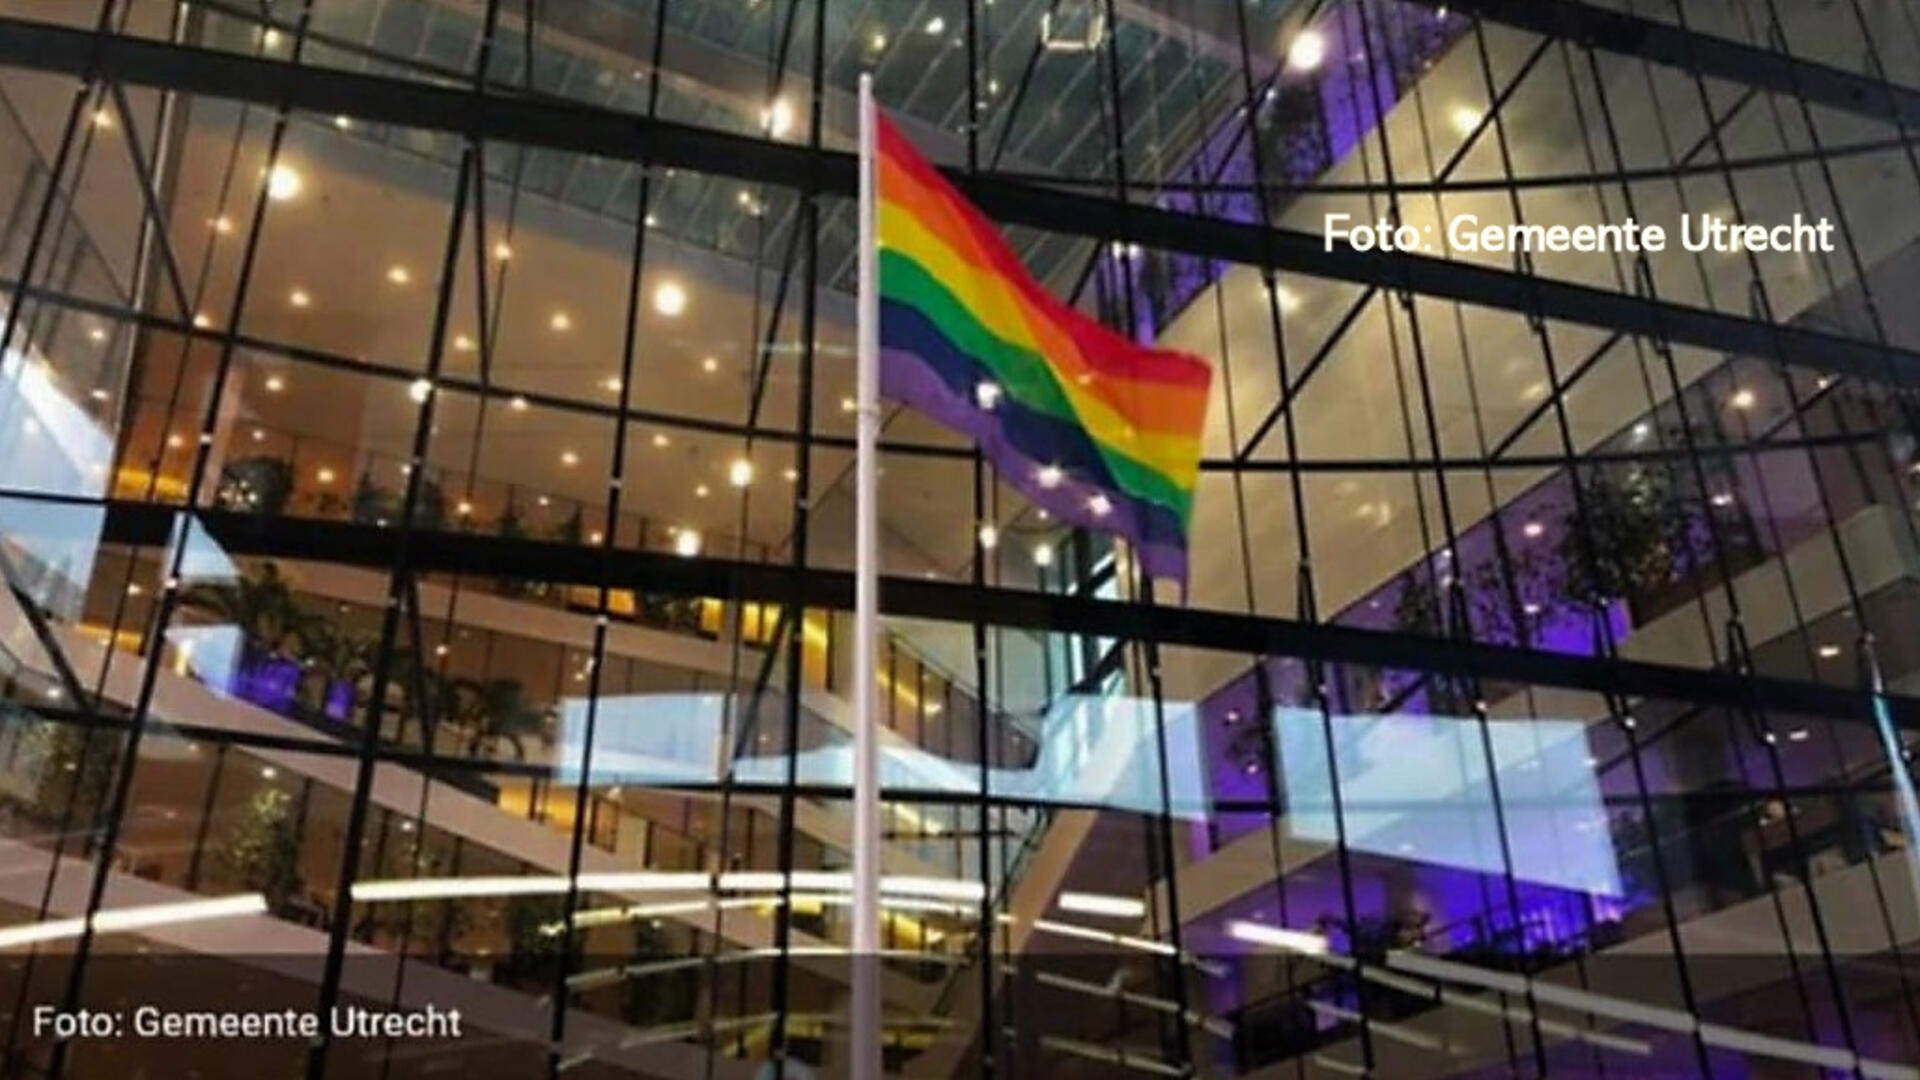 Foto van gemeentekantoor Utrecht met regenboogvlag - copyright gemeente Utrecht